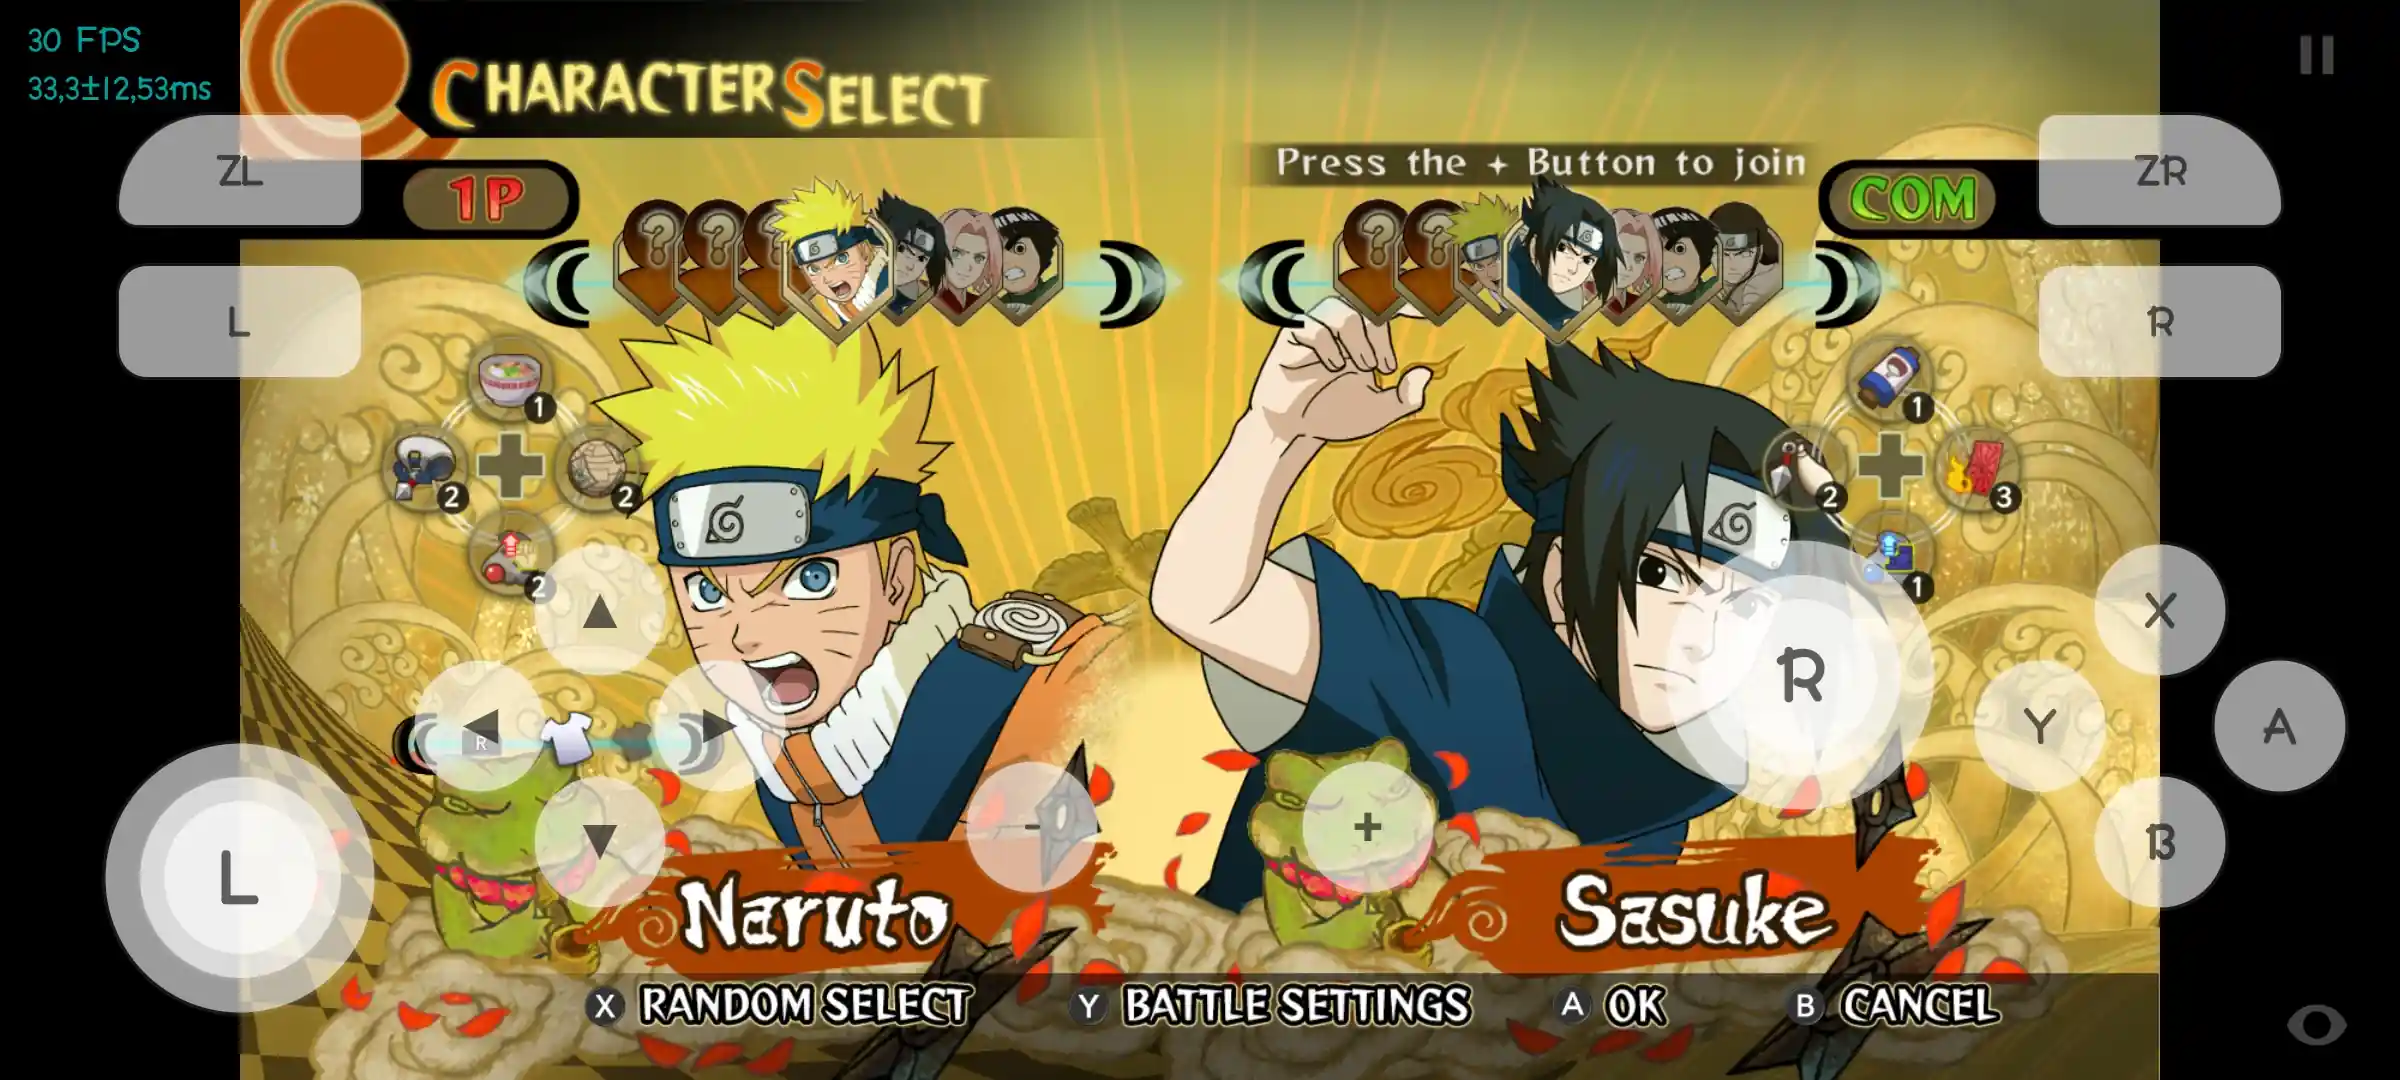 Naruto Ultimate Ninja Storm APK + OBB - Descàrrega d'Android - Emulador Skyline Edge